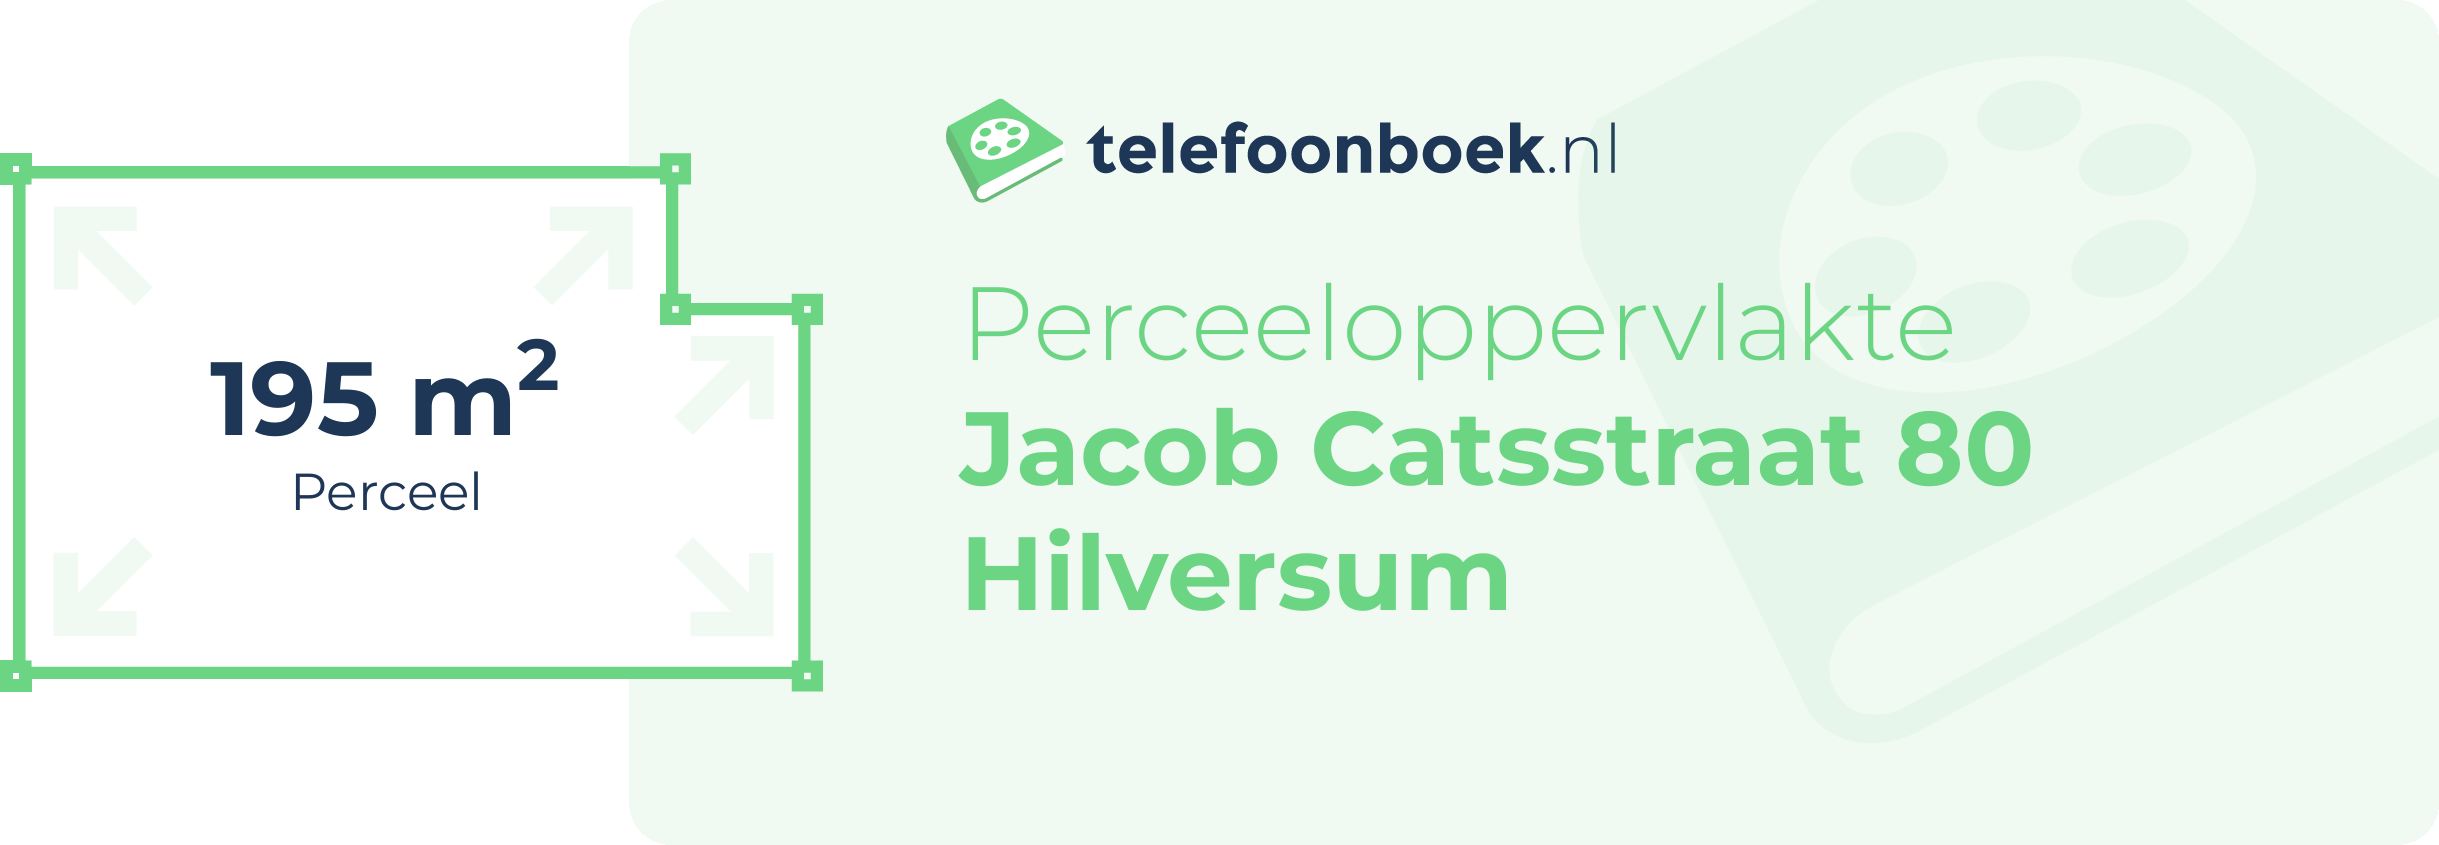 Perceeloppervlakte Jacob Catsstraat 80 Hilversum